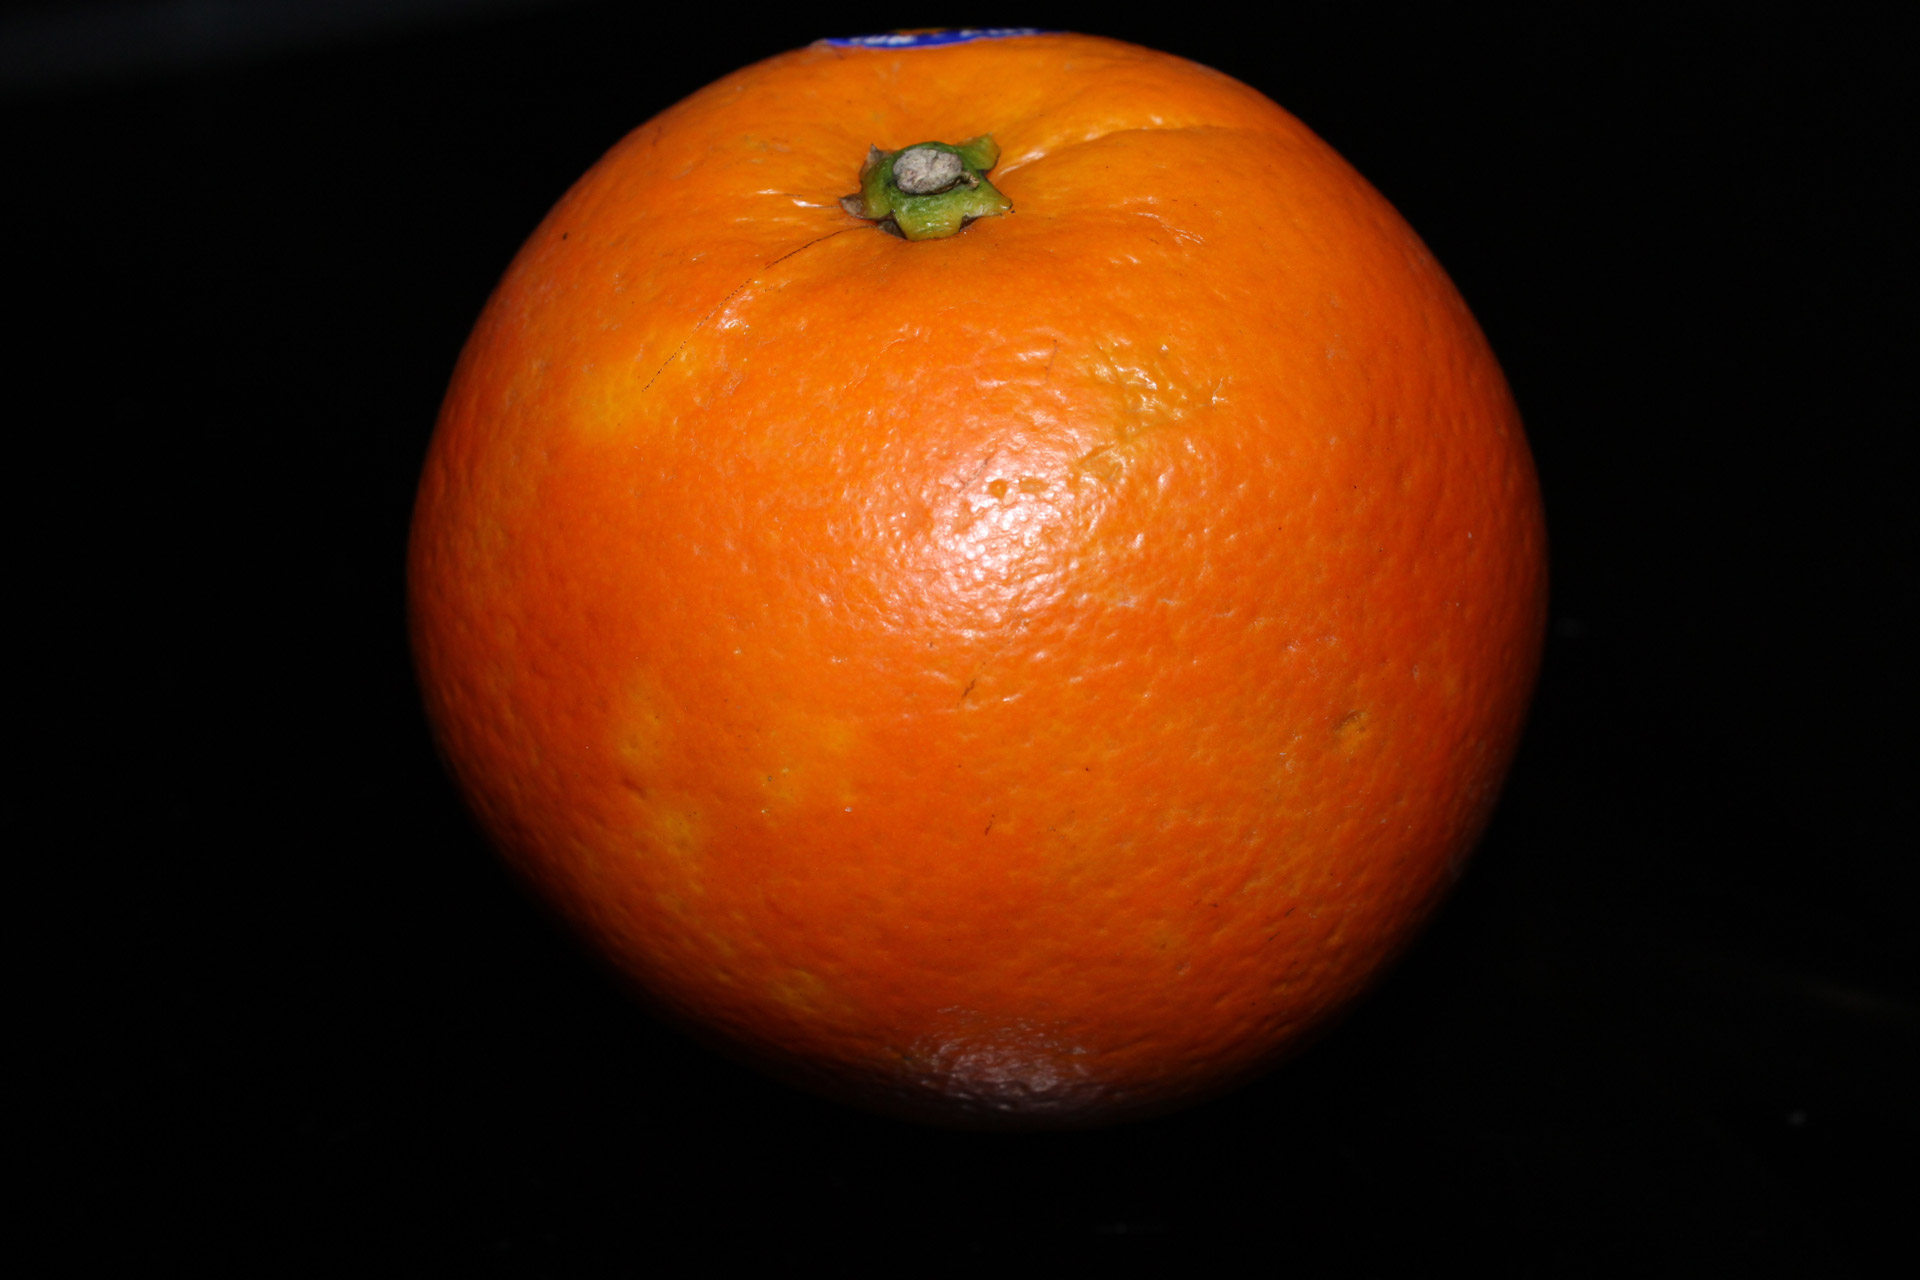 One Big Orange Fruit